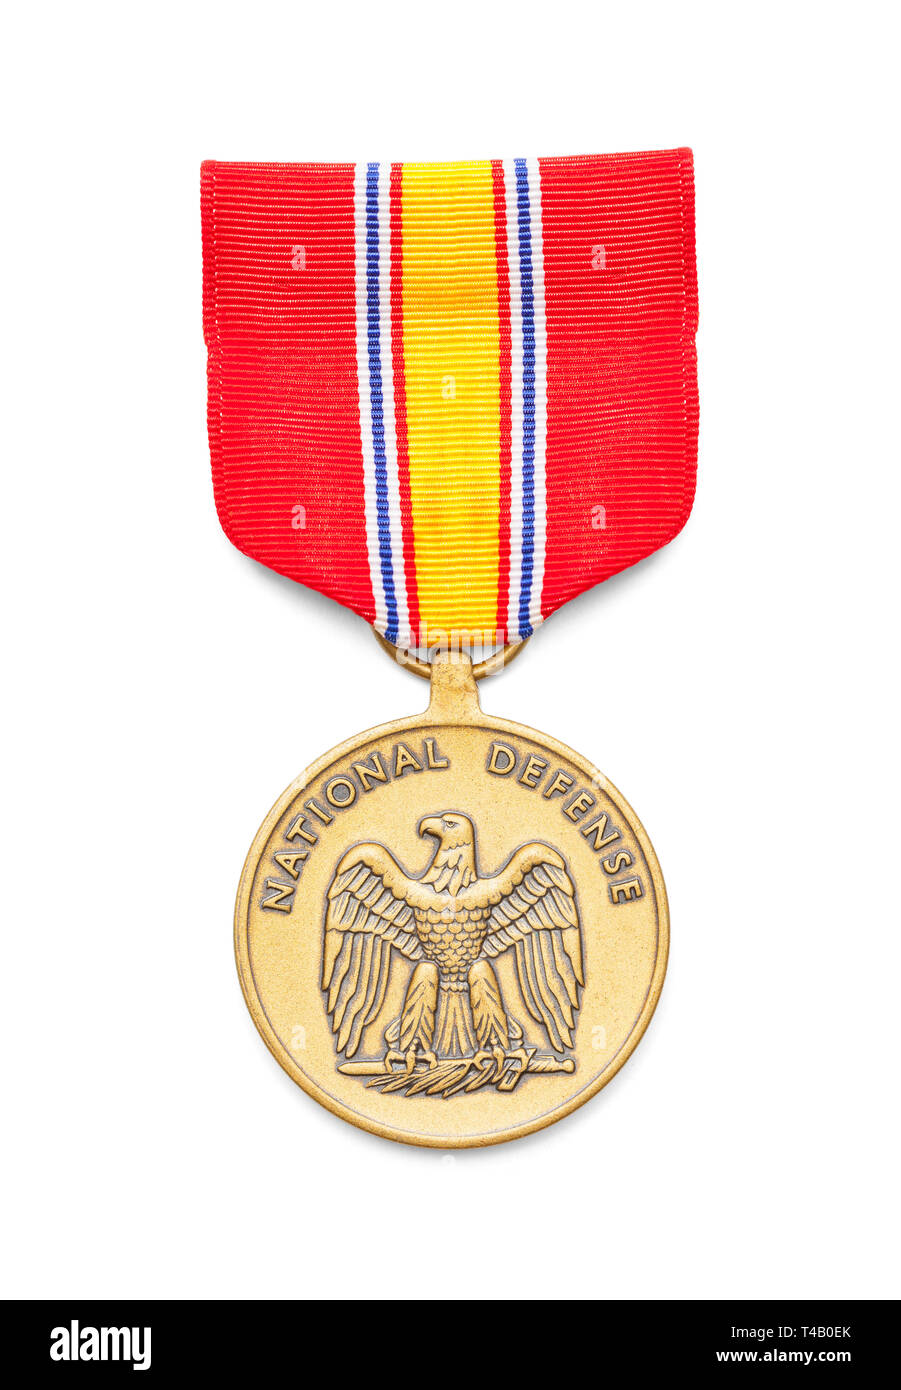 United States Air Force Nationale Verteidigung Medaille schneiden Sie auf Weiß. Stockfoto